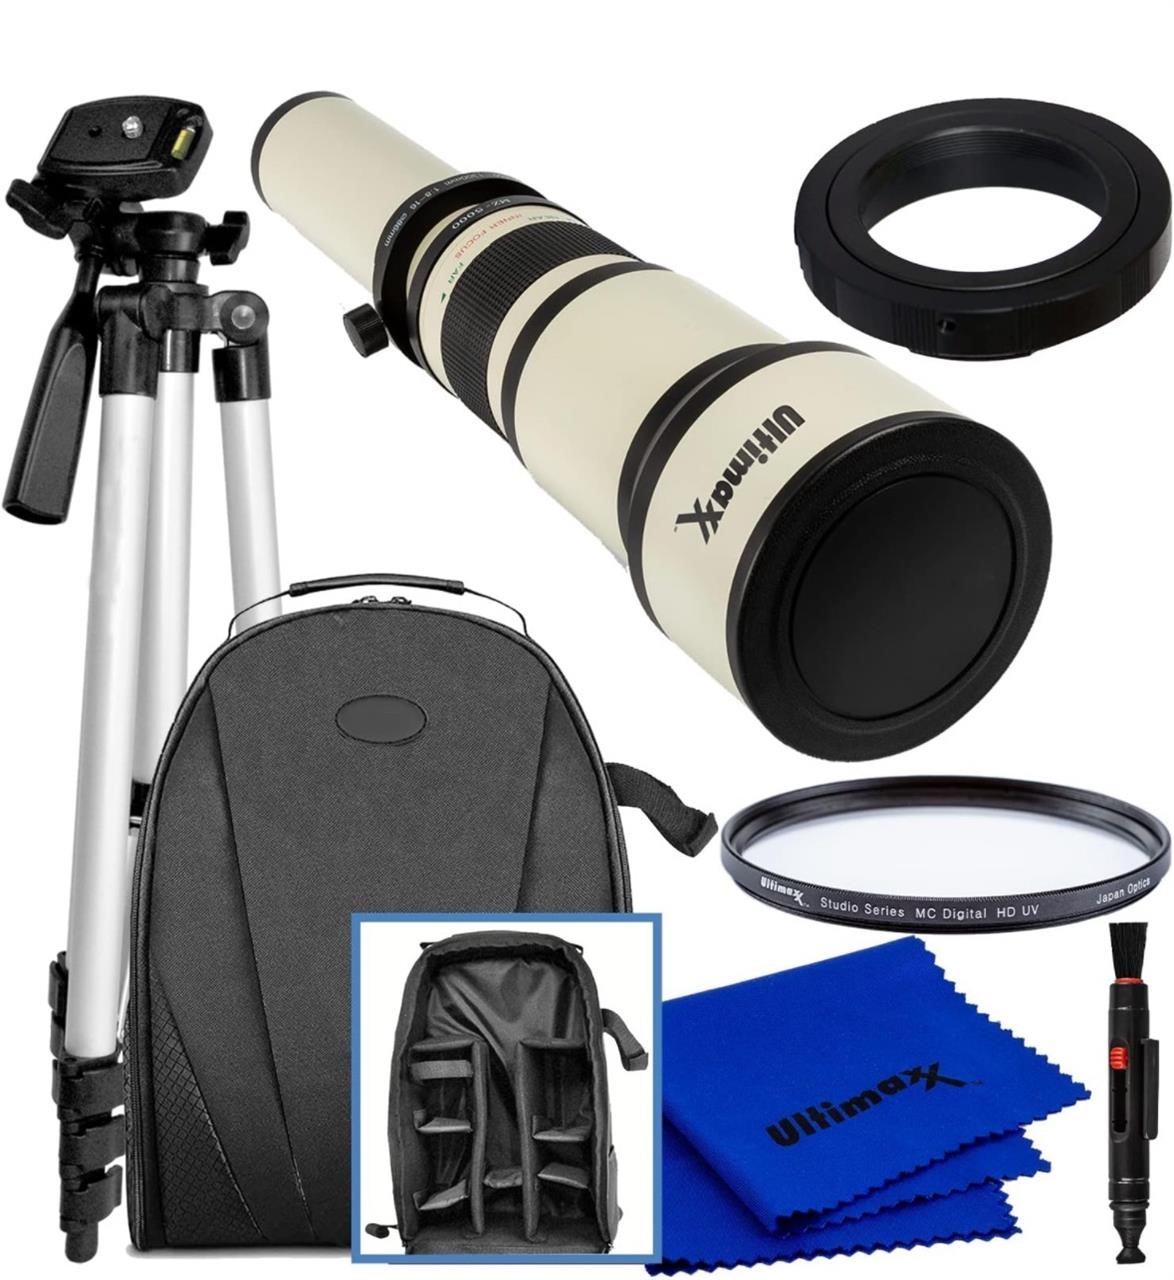 NEW $220 650-1300mm Telephoto Zoom Lens Kit